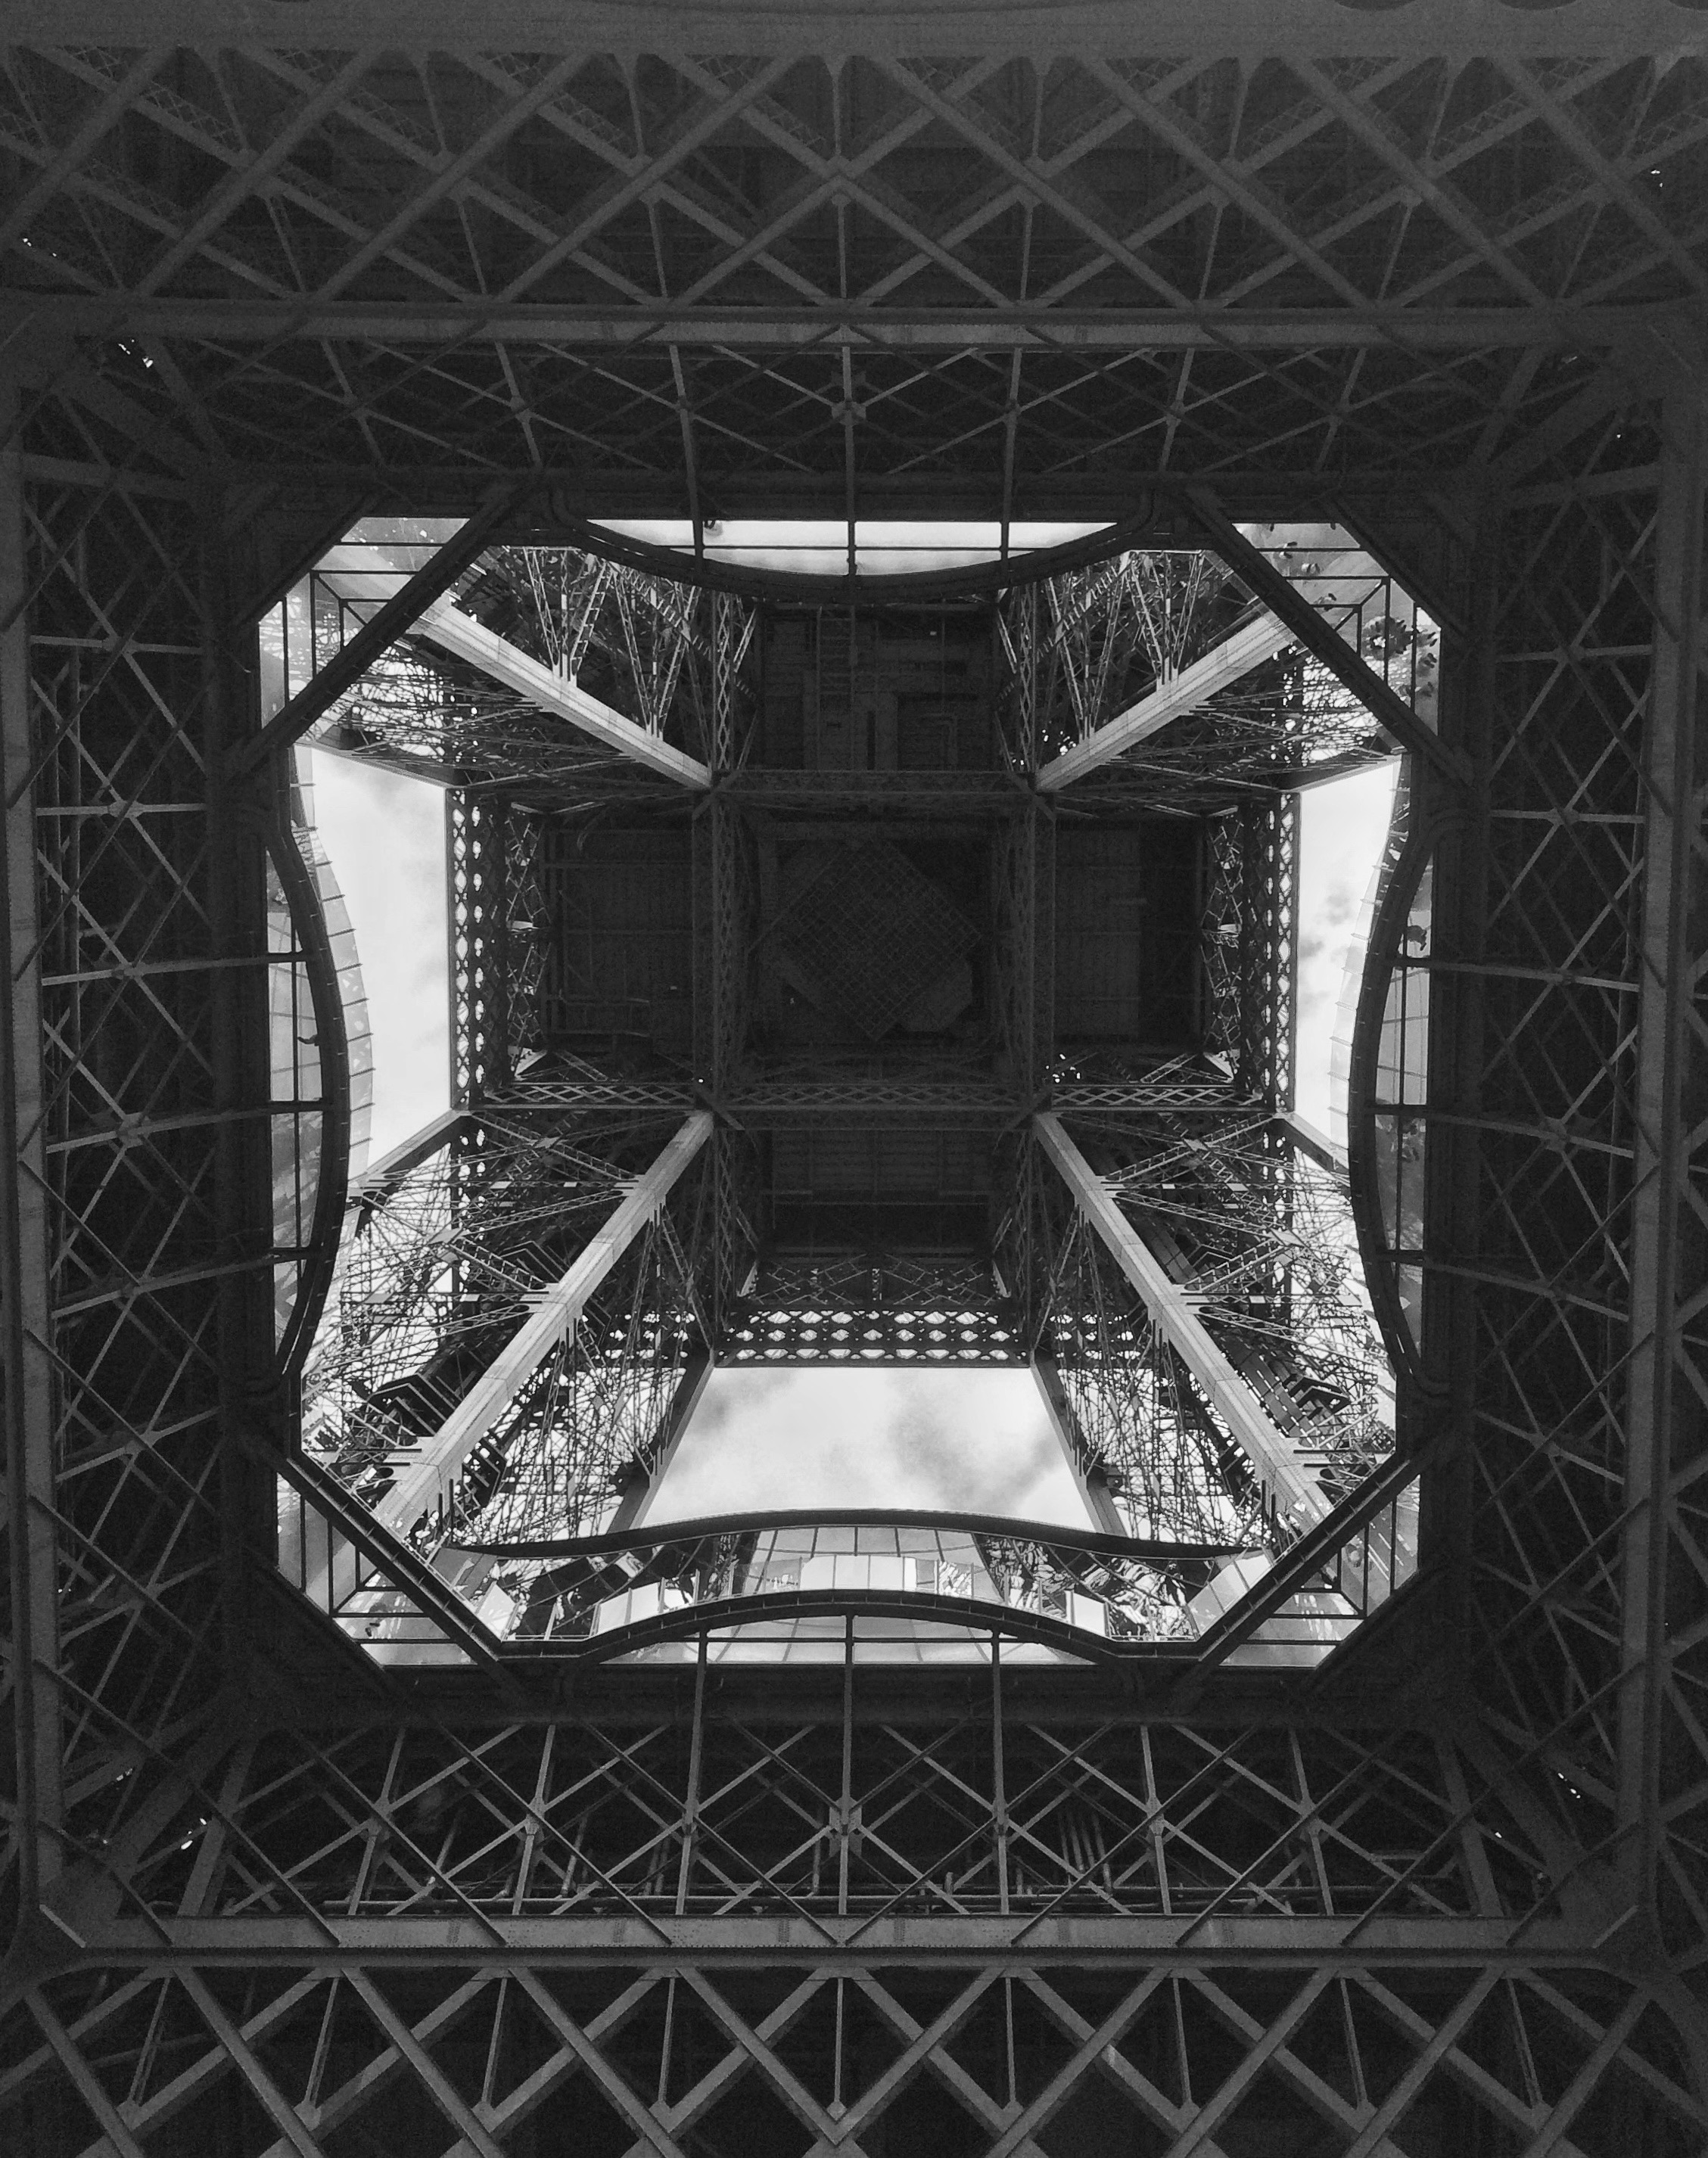 Fekete-fehér fénykép az Eiffel-toronyról, alulról